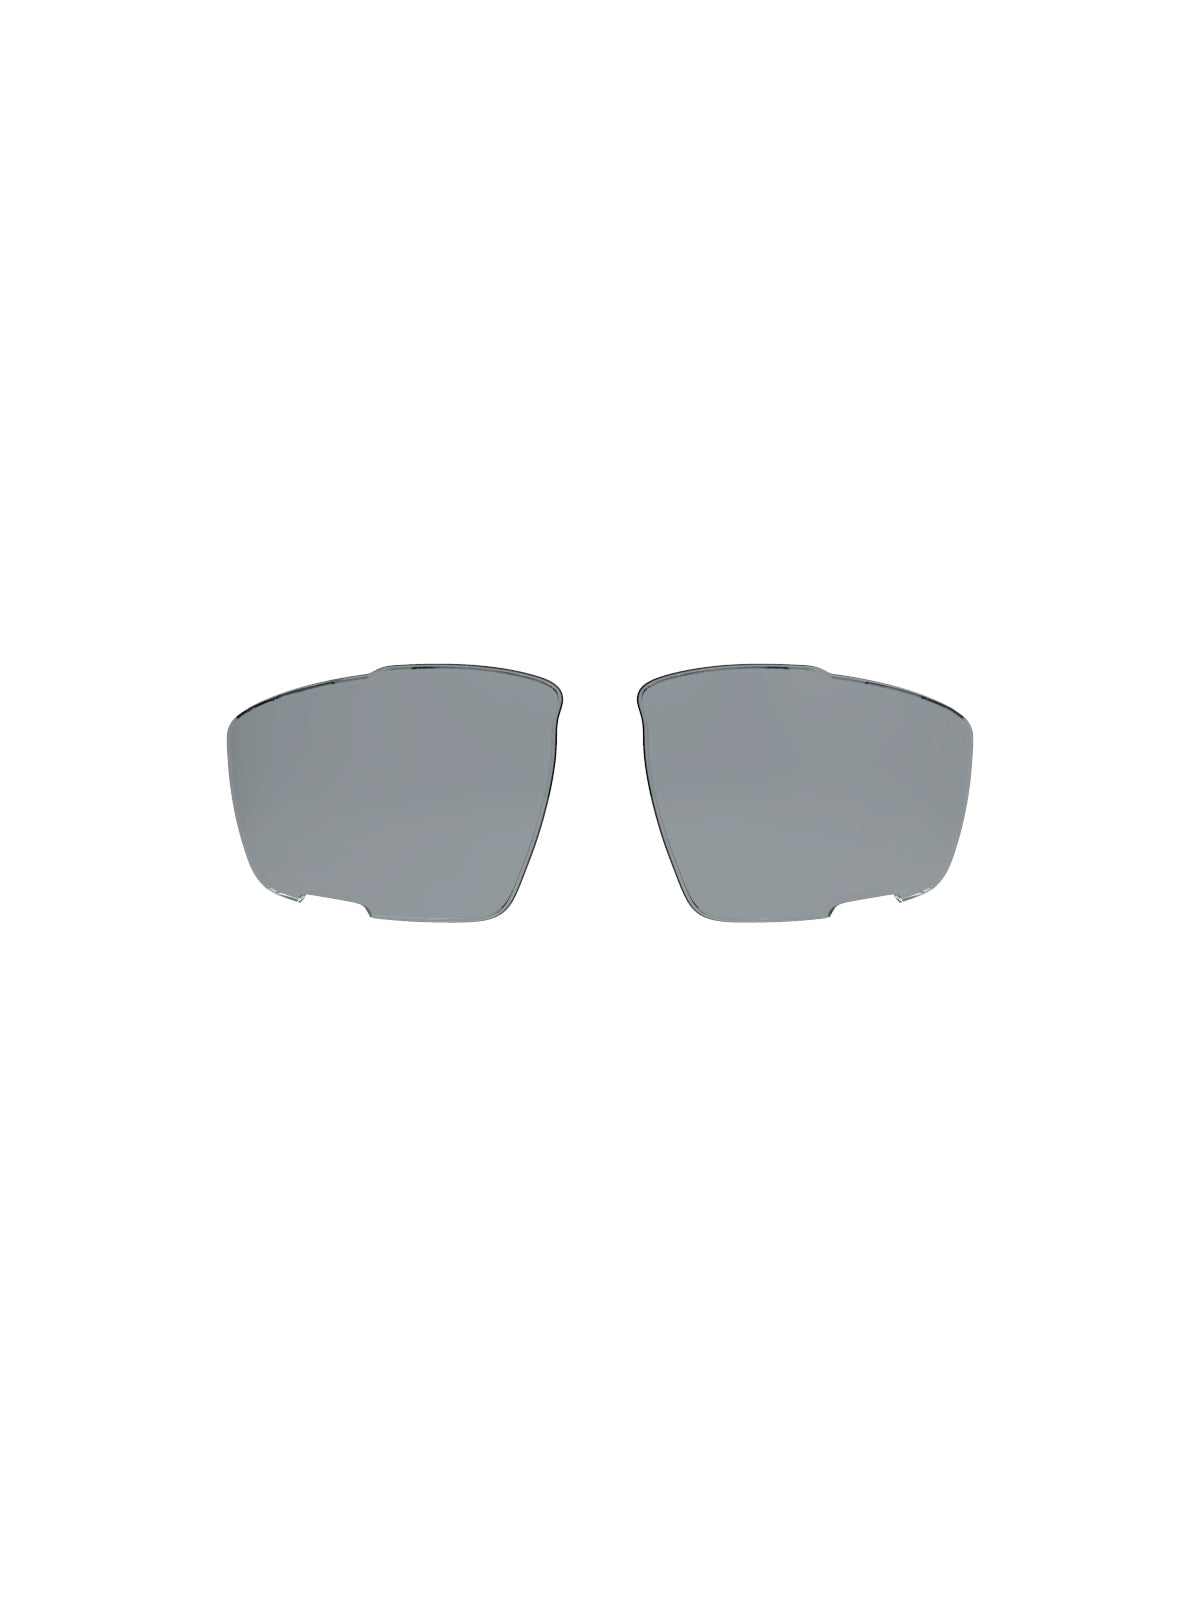 Szyba polaryzacyjna do okularów RUDY PROJECT SINTRYX